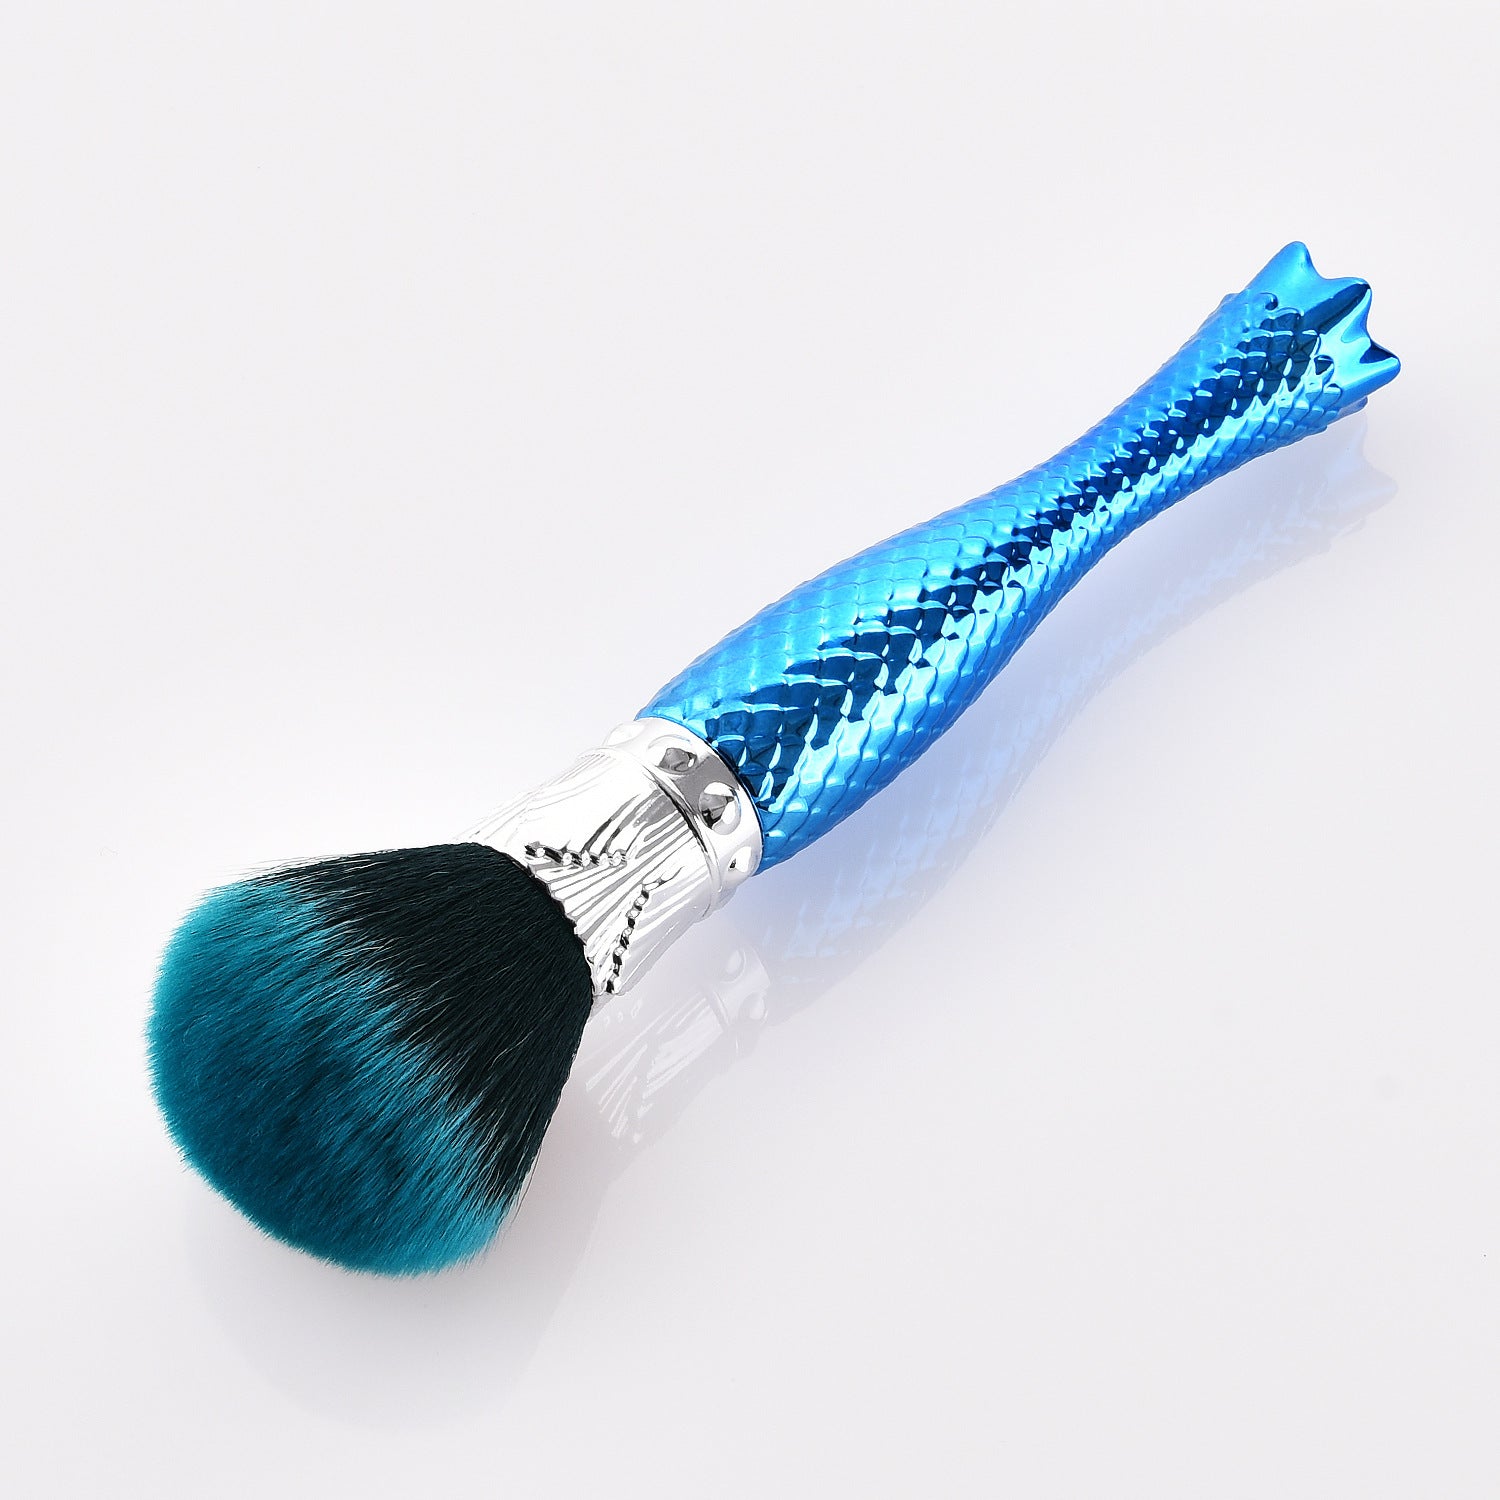 Single makeup brush makeup tool blue